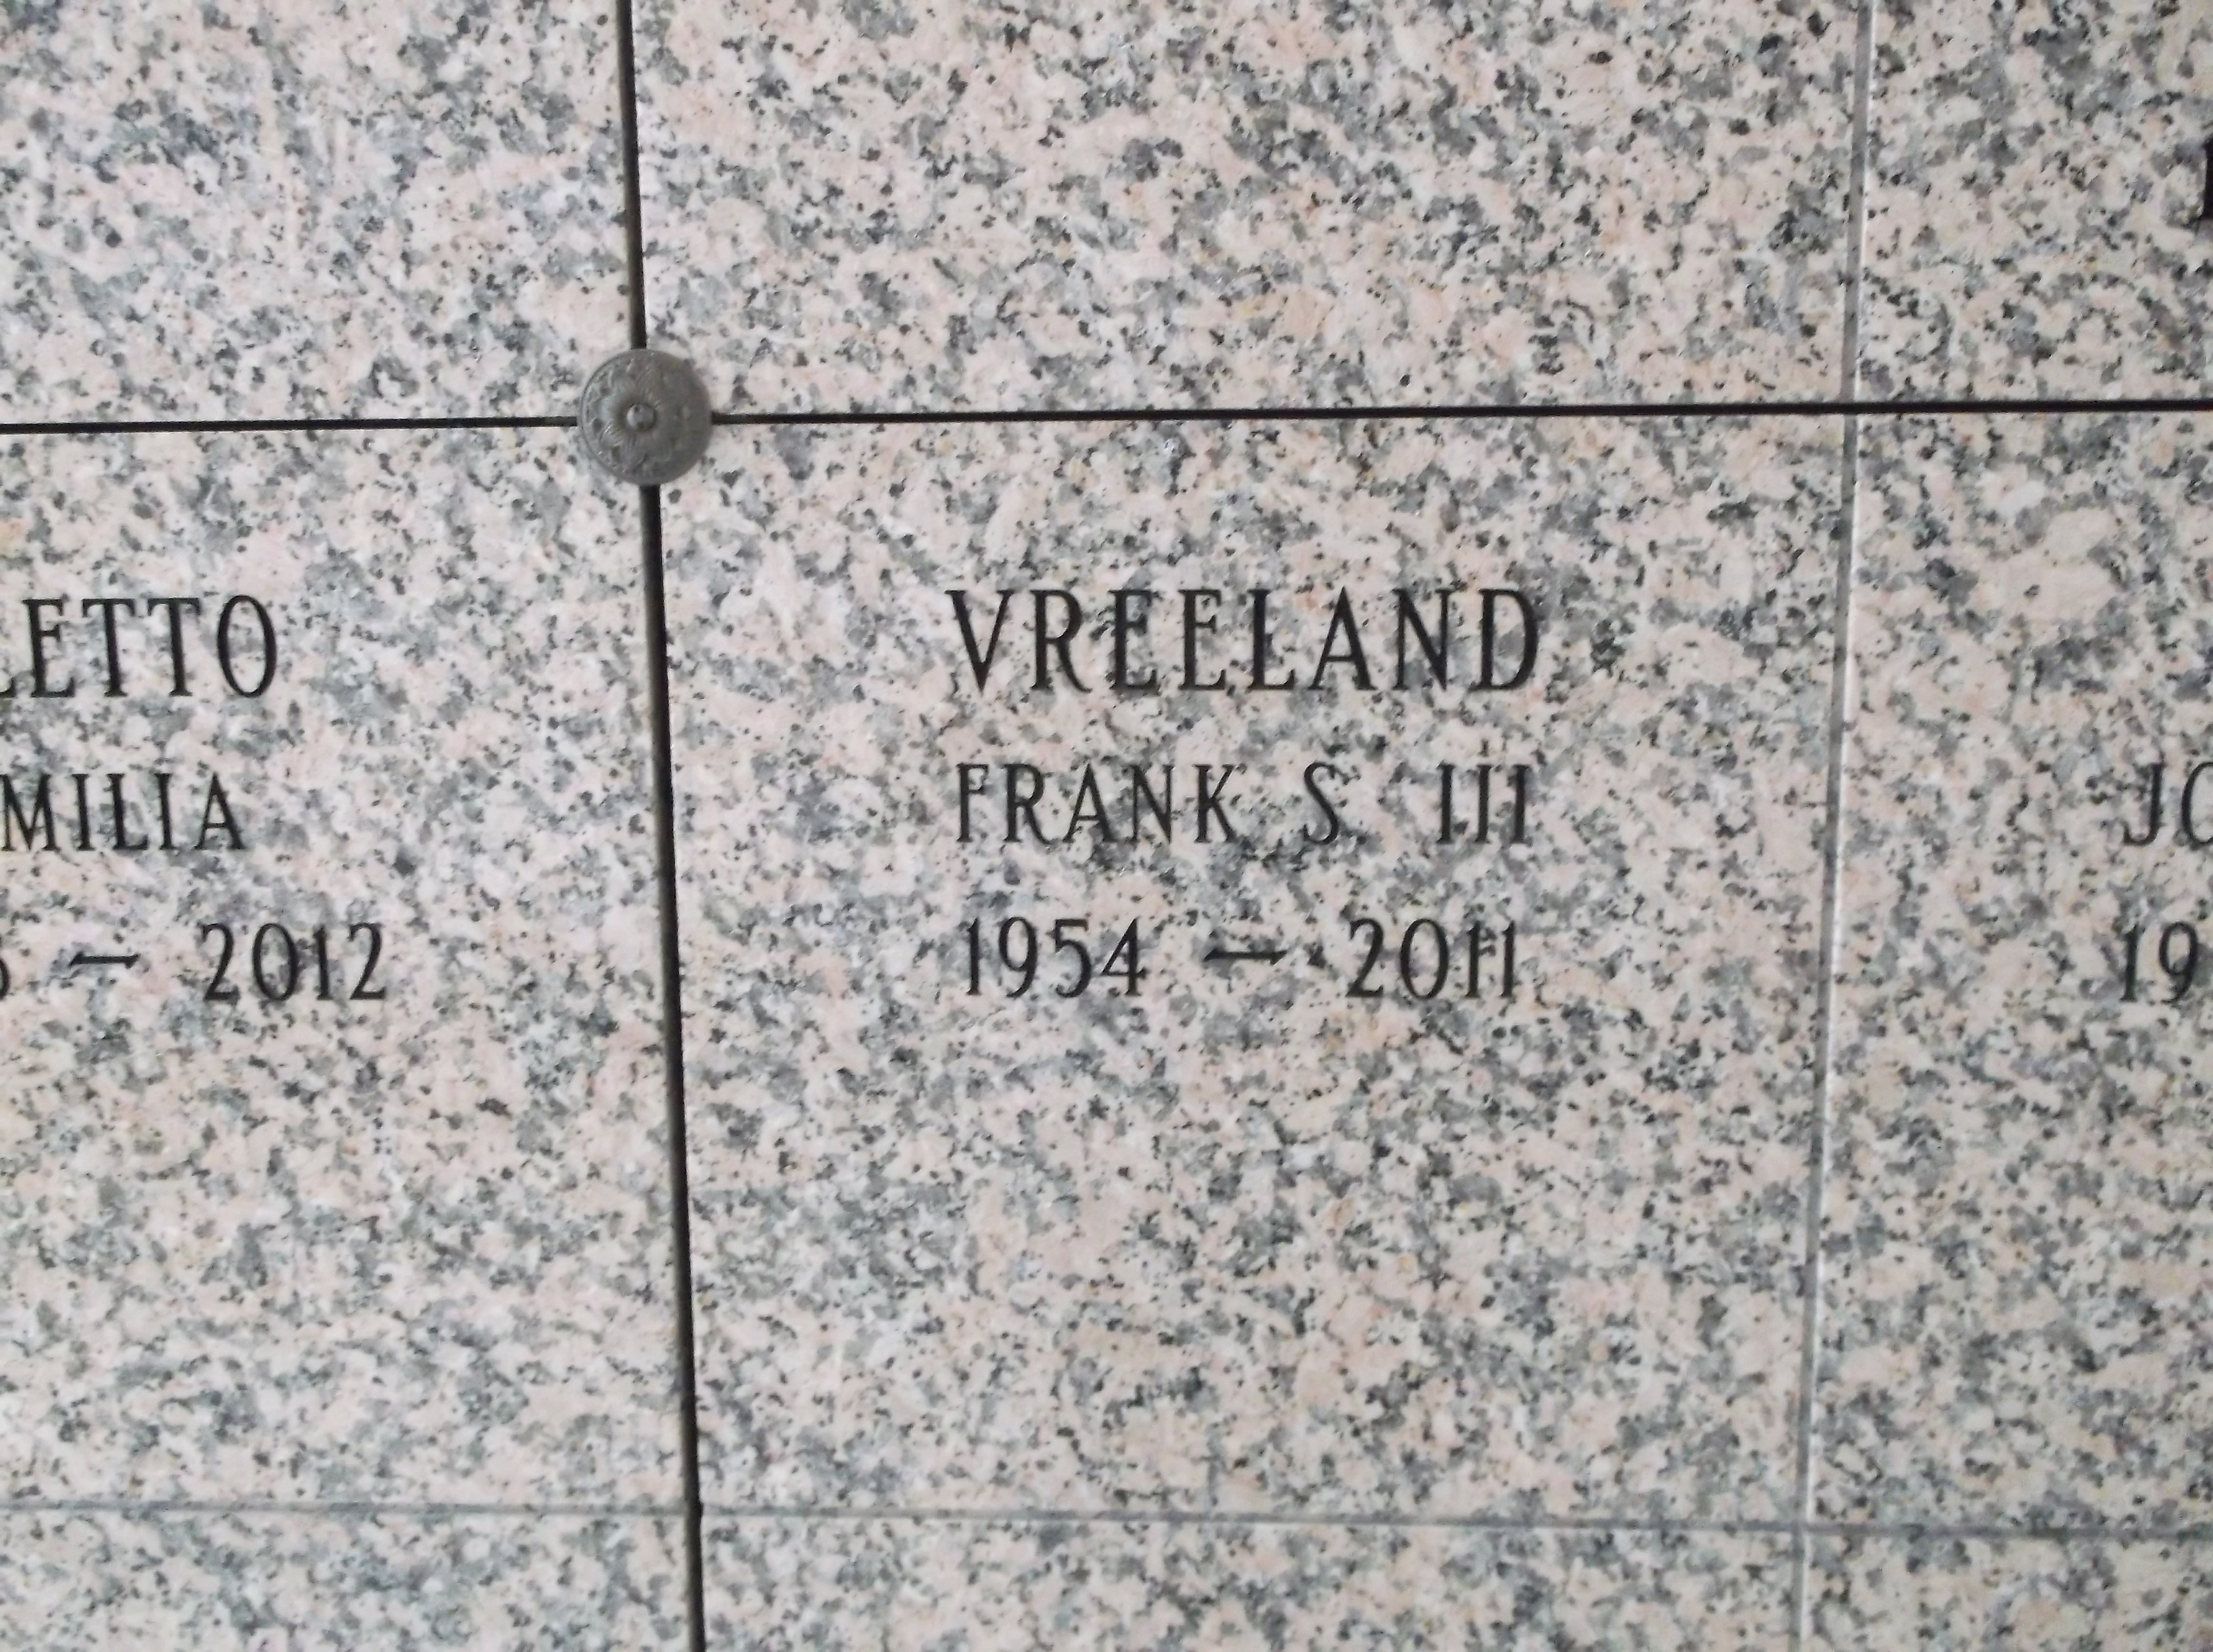 Frank S Vreeland, III